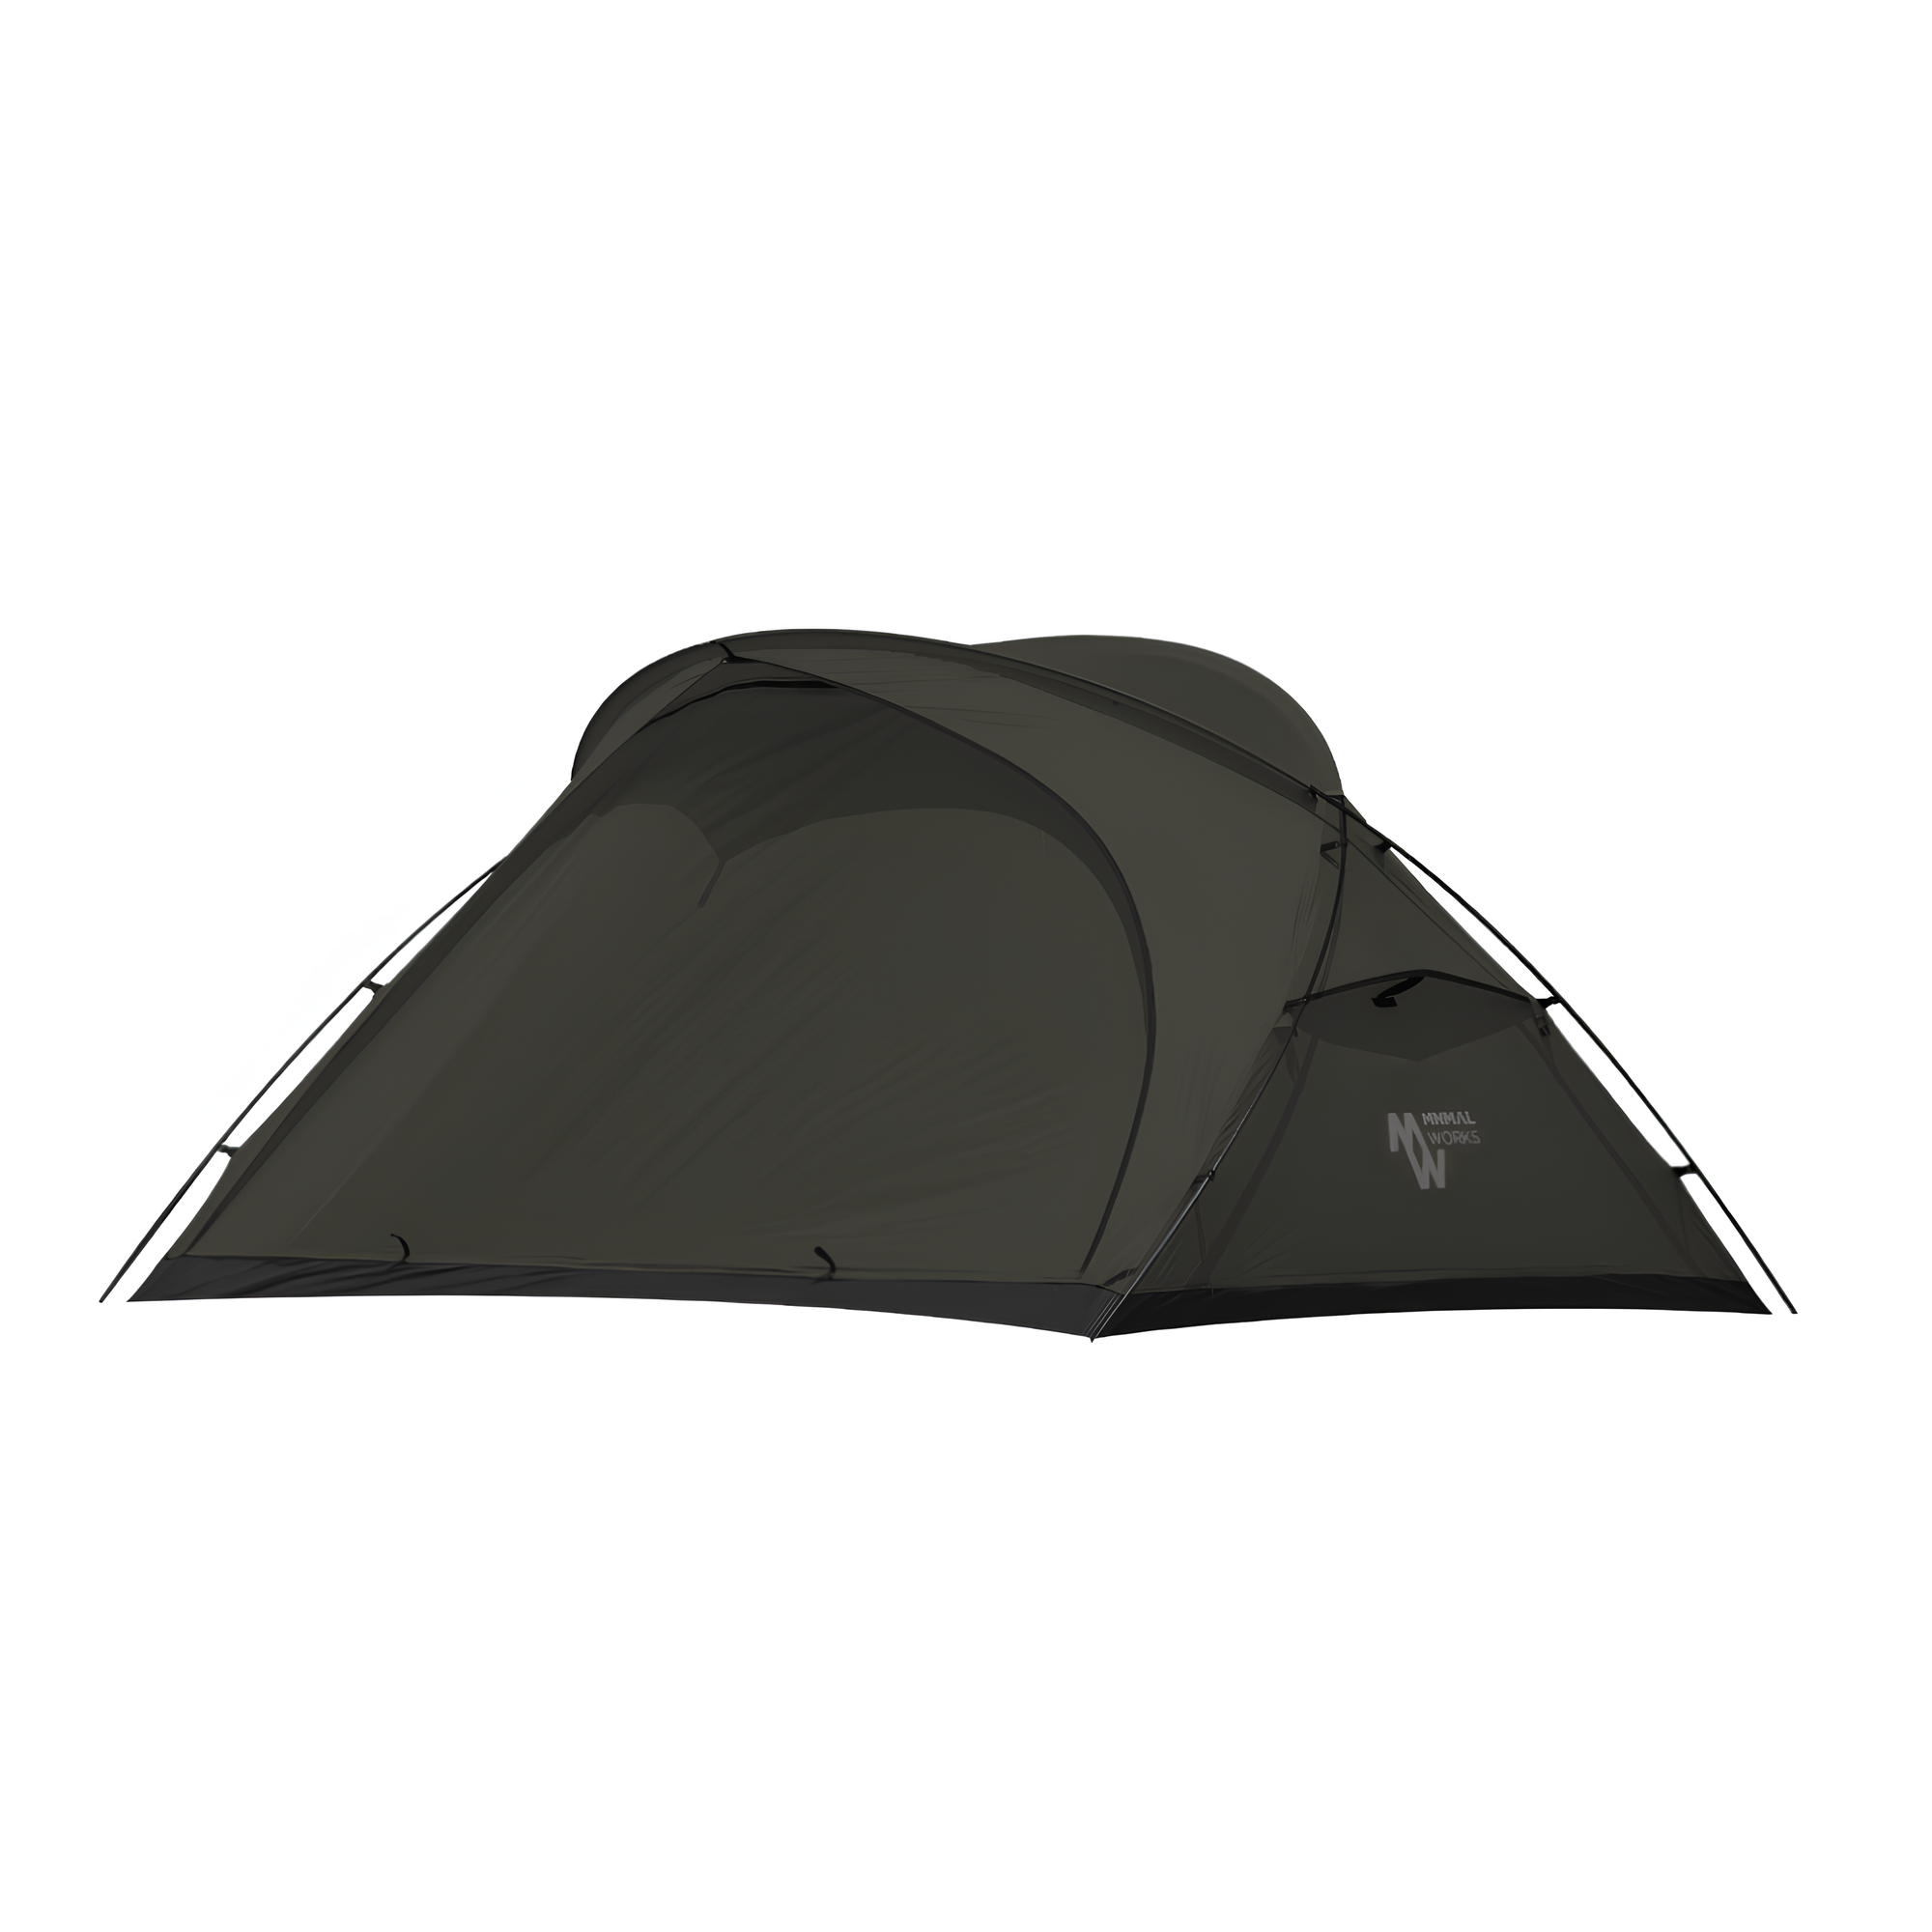 미니멀웍스 캠핑 텐트 파프리카 매그넘 올리브 전용가방 세트